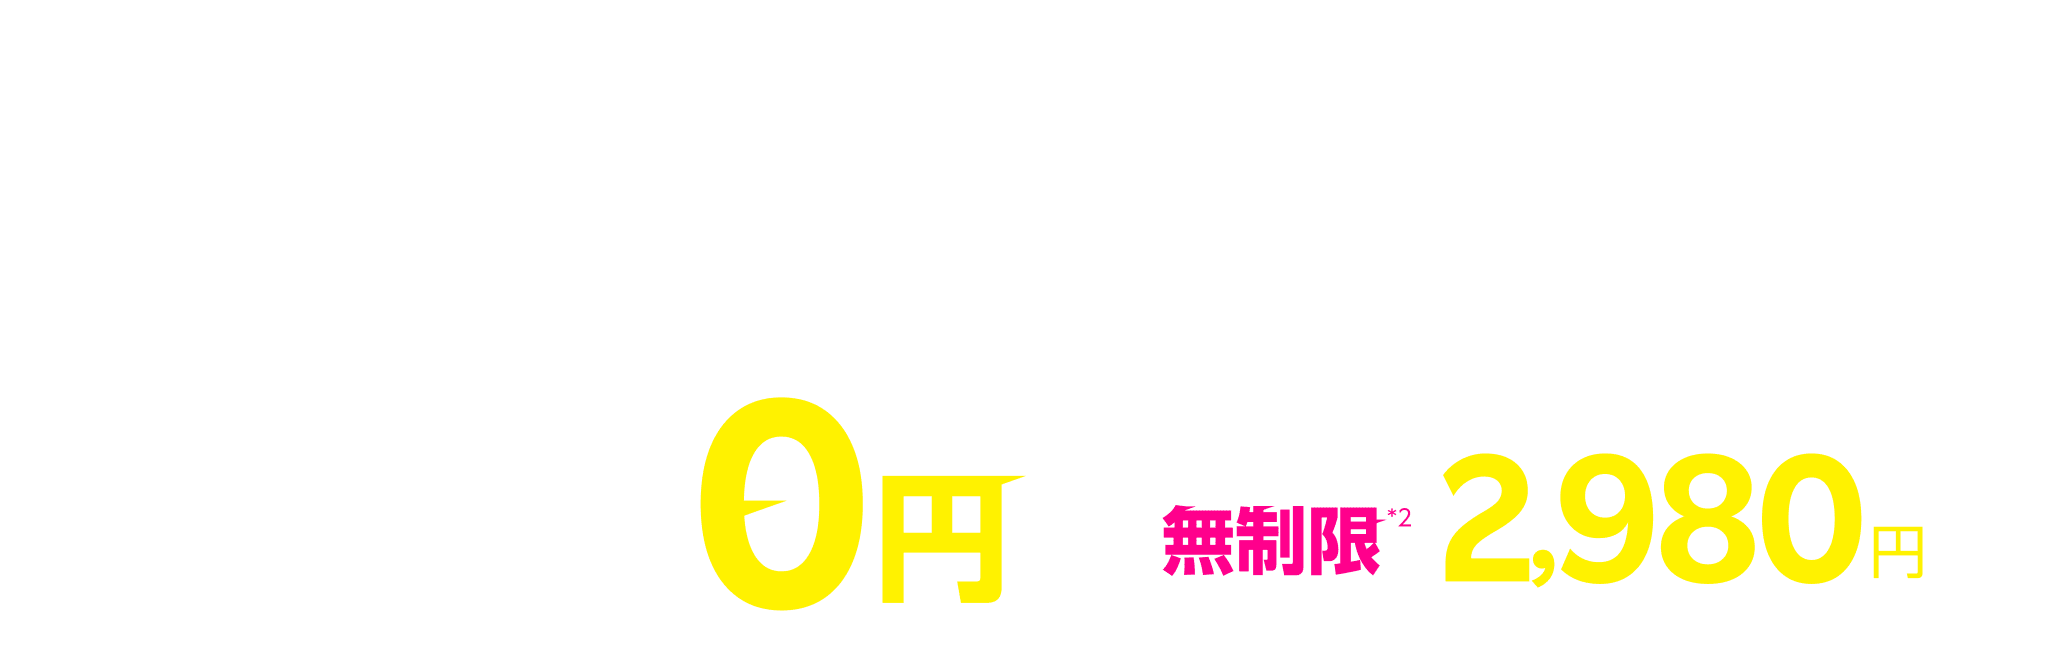 Rakuten UN-LIMIT VI すべての人に最適なワンプラン データ1GBまで0円/月*1 *1回線目のみ どれだけ使っても無制限*2 楽天回線エリア外は最大1Mbpsで使い放題*2 2,980円/月（税込3,278円）